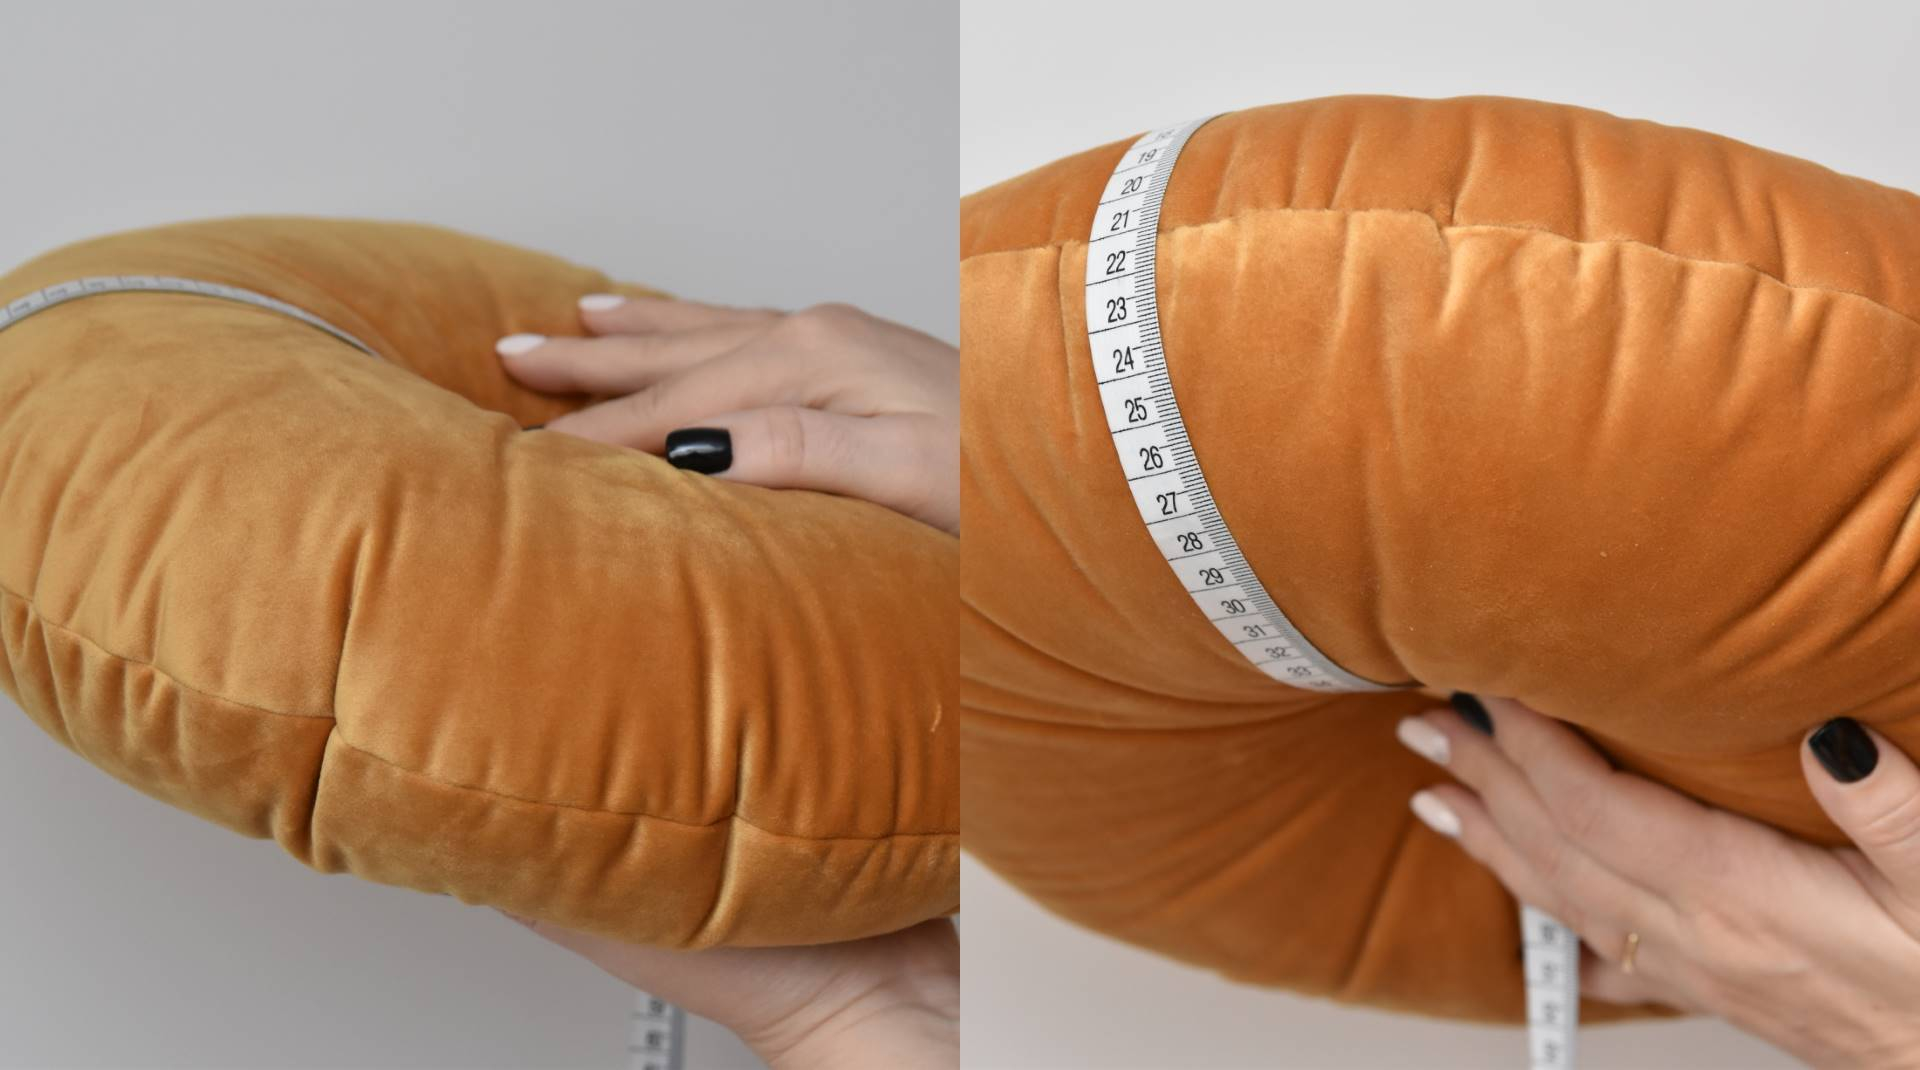 Jak mierzymy poduszki okrągłe?